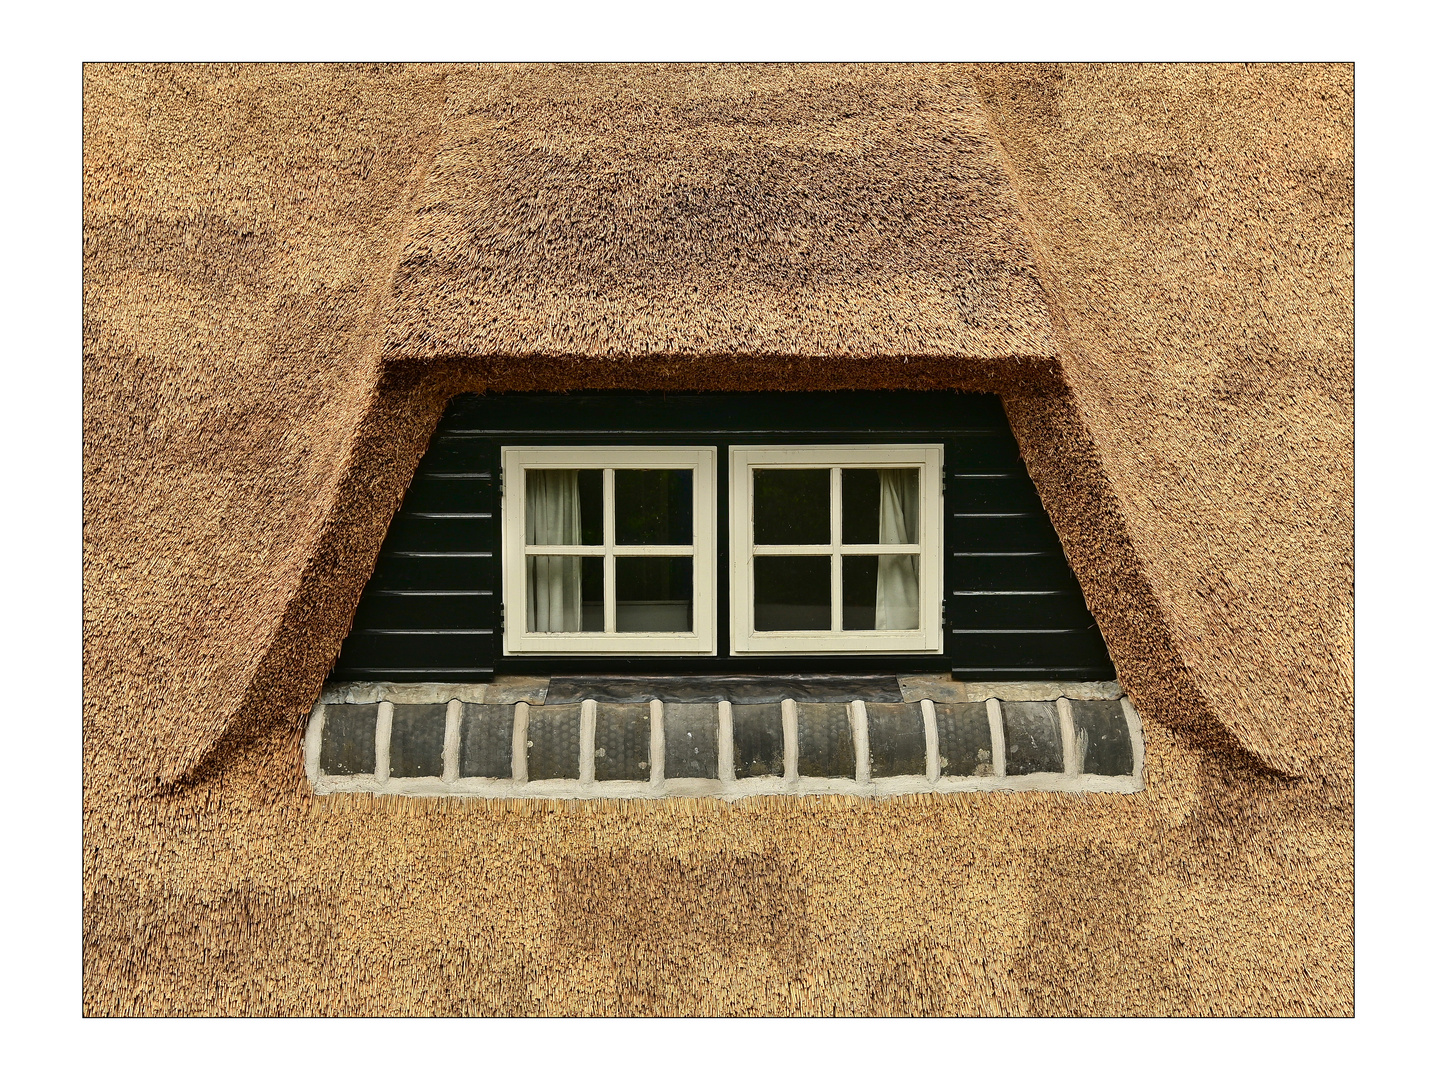 Fenster und Reetdach 